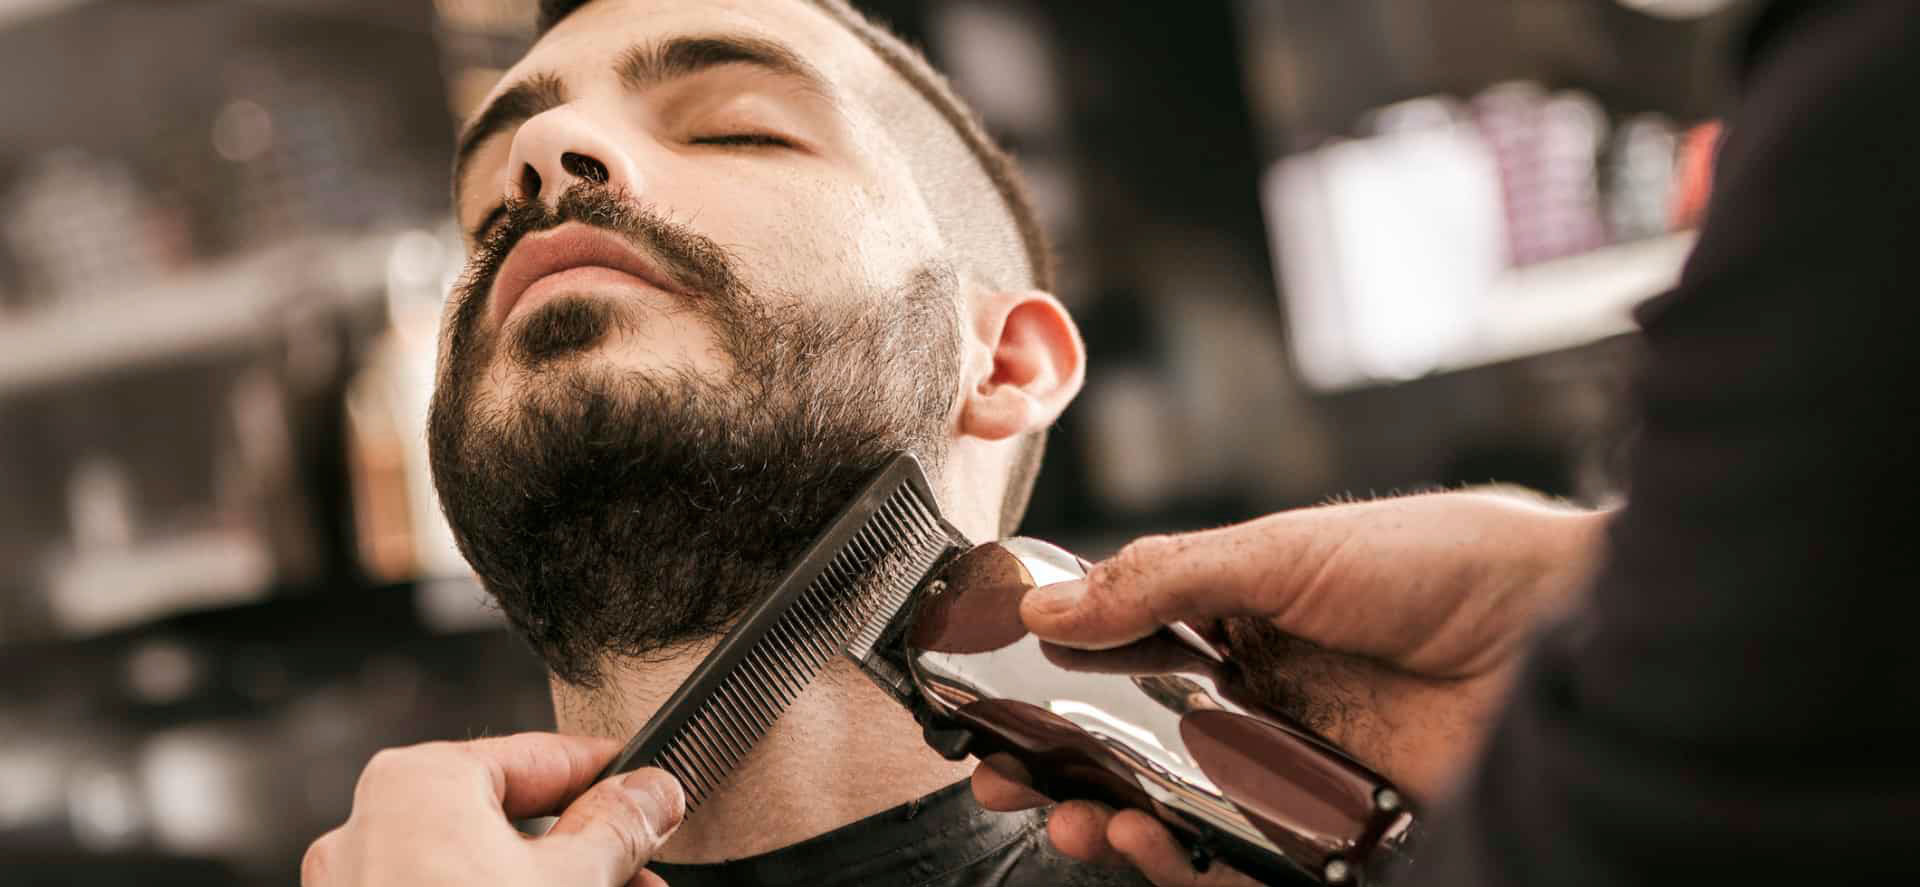 Бритье бороды и усов в парикмахерской